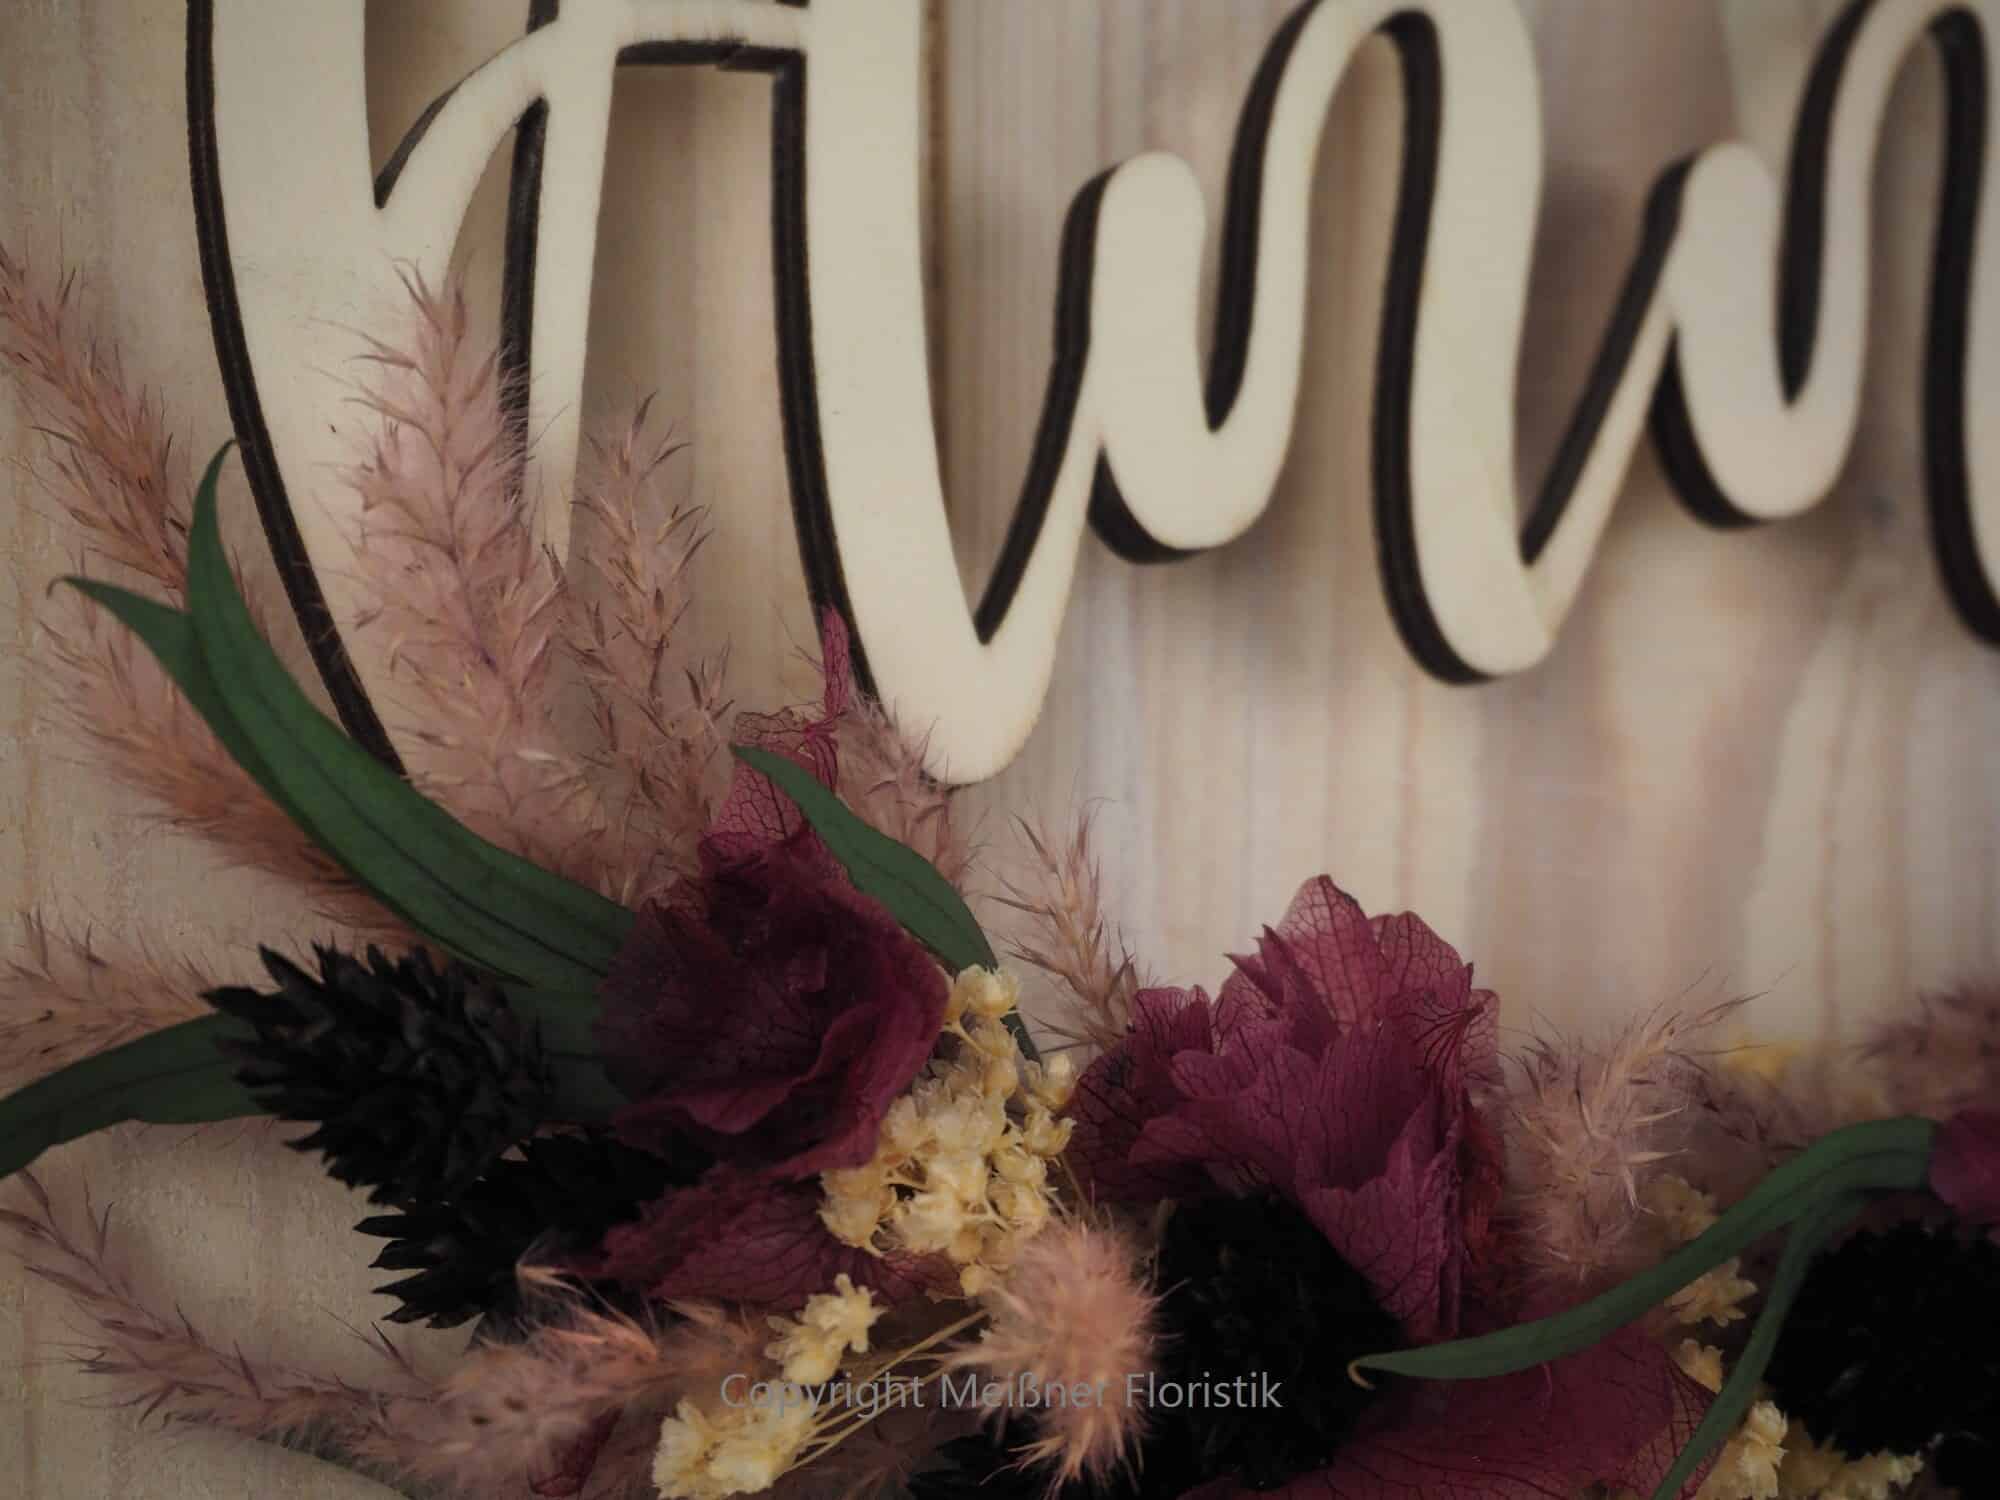 personalisiertes Namensschild aus Holz mit Trockenblumen individualisiert verschiedene Durchmesser lila schwarz